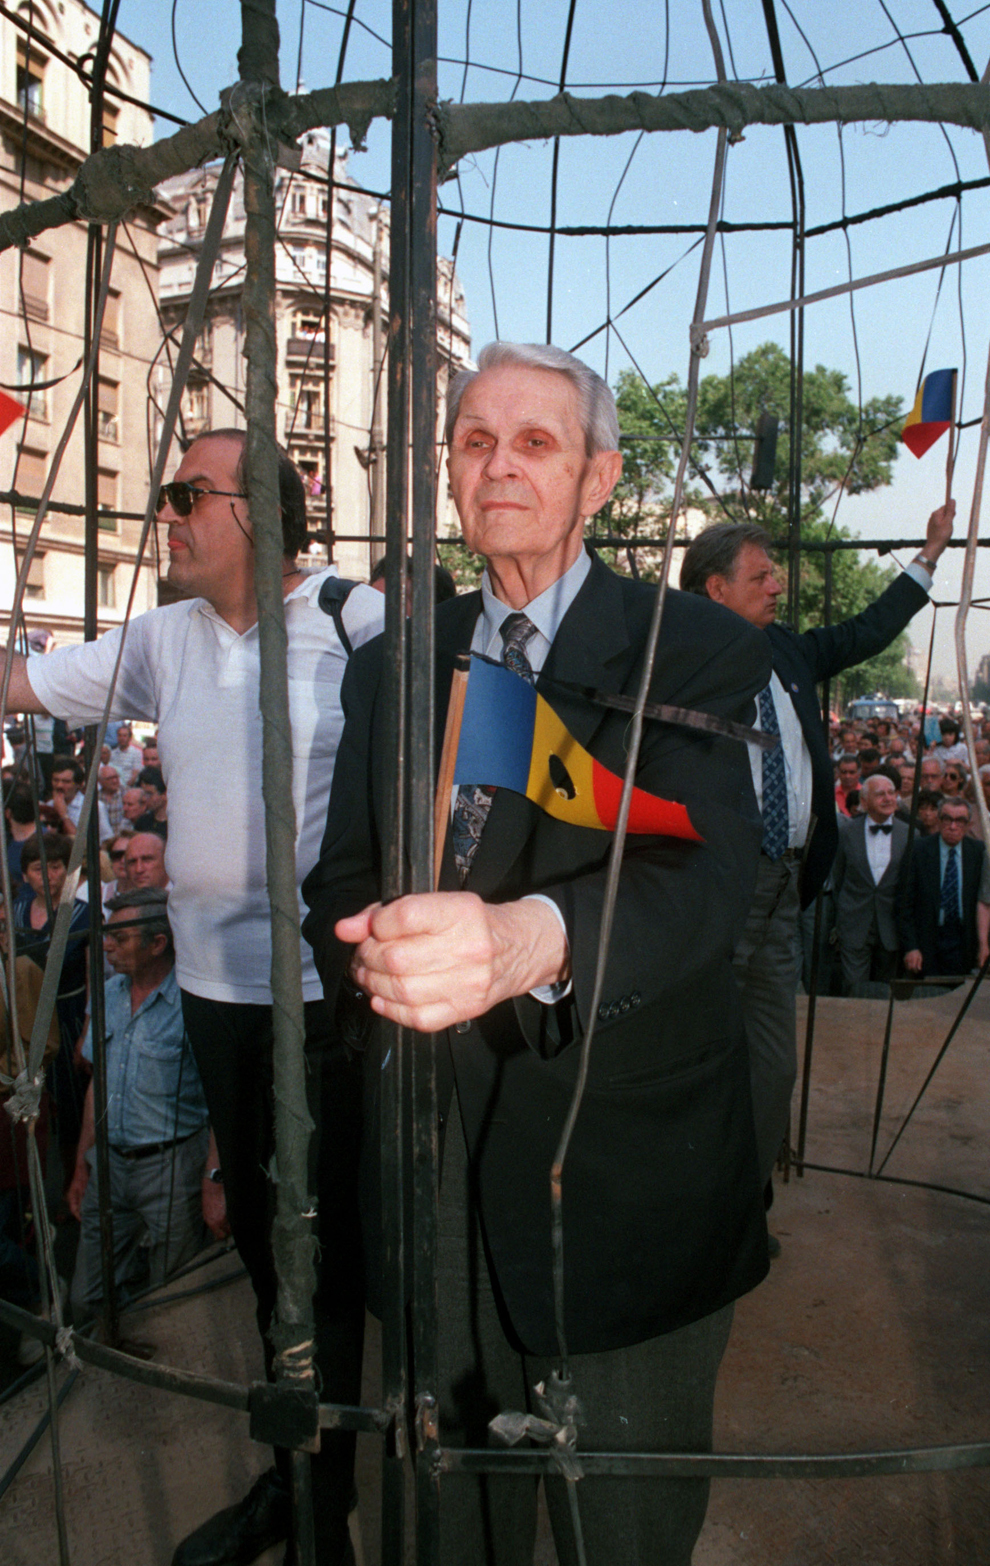 Marş de protest pentru respectarea drepturilor democratice, organizat de Alianţa Civică în colaborare cu partidele de opoziţie şi societatea civilă. În imagine, preşedintele PNŢCD, Corneliu Coposu (D) şi pianistul Dan Grigore(S).